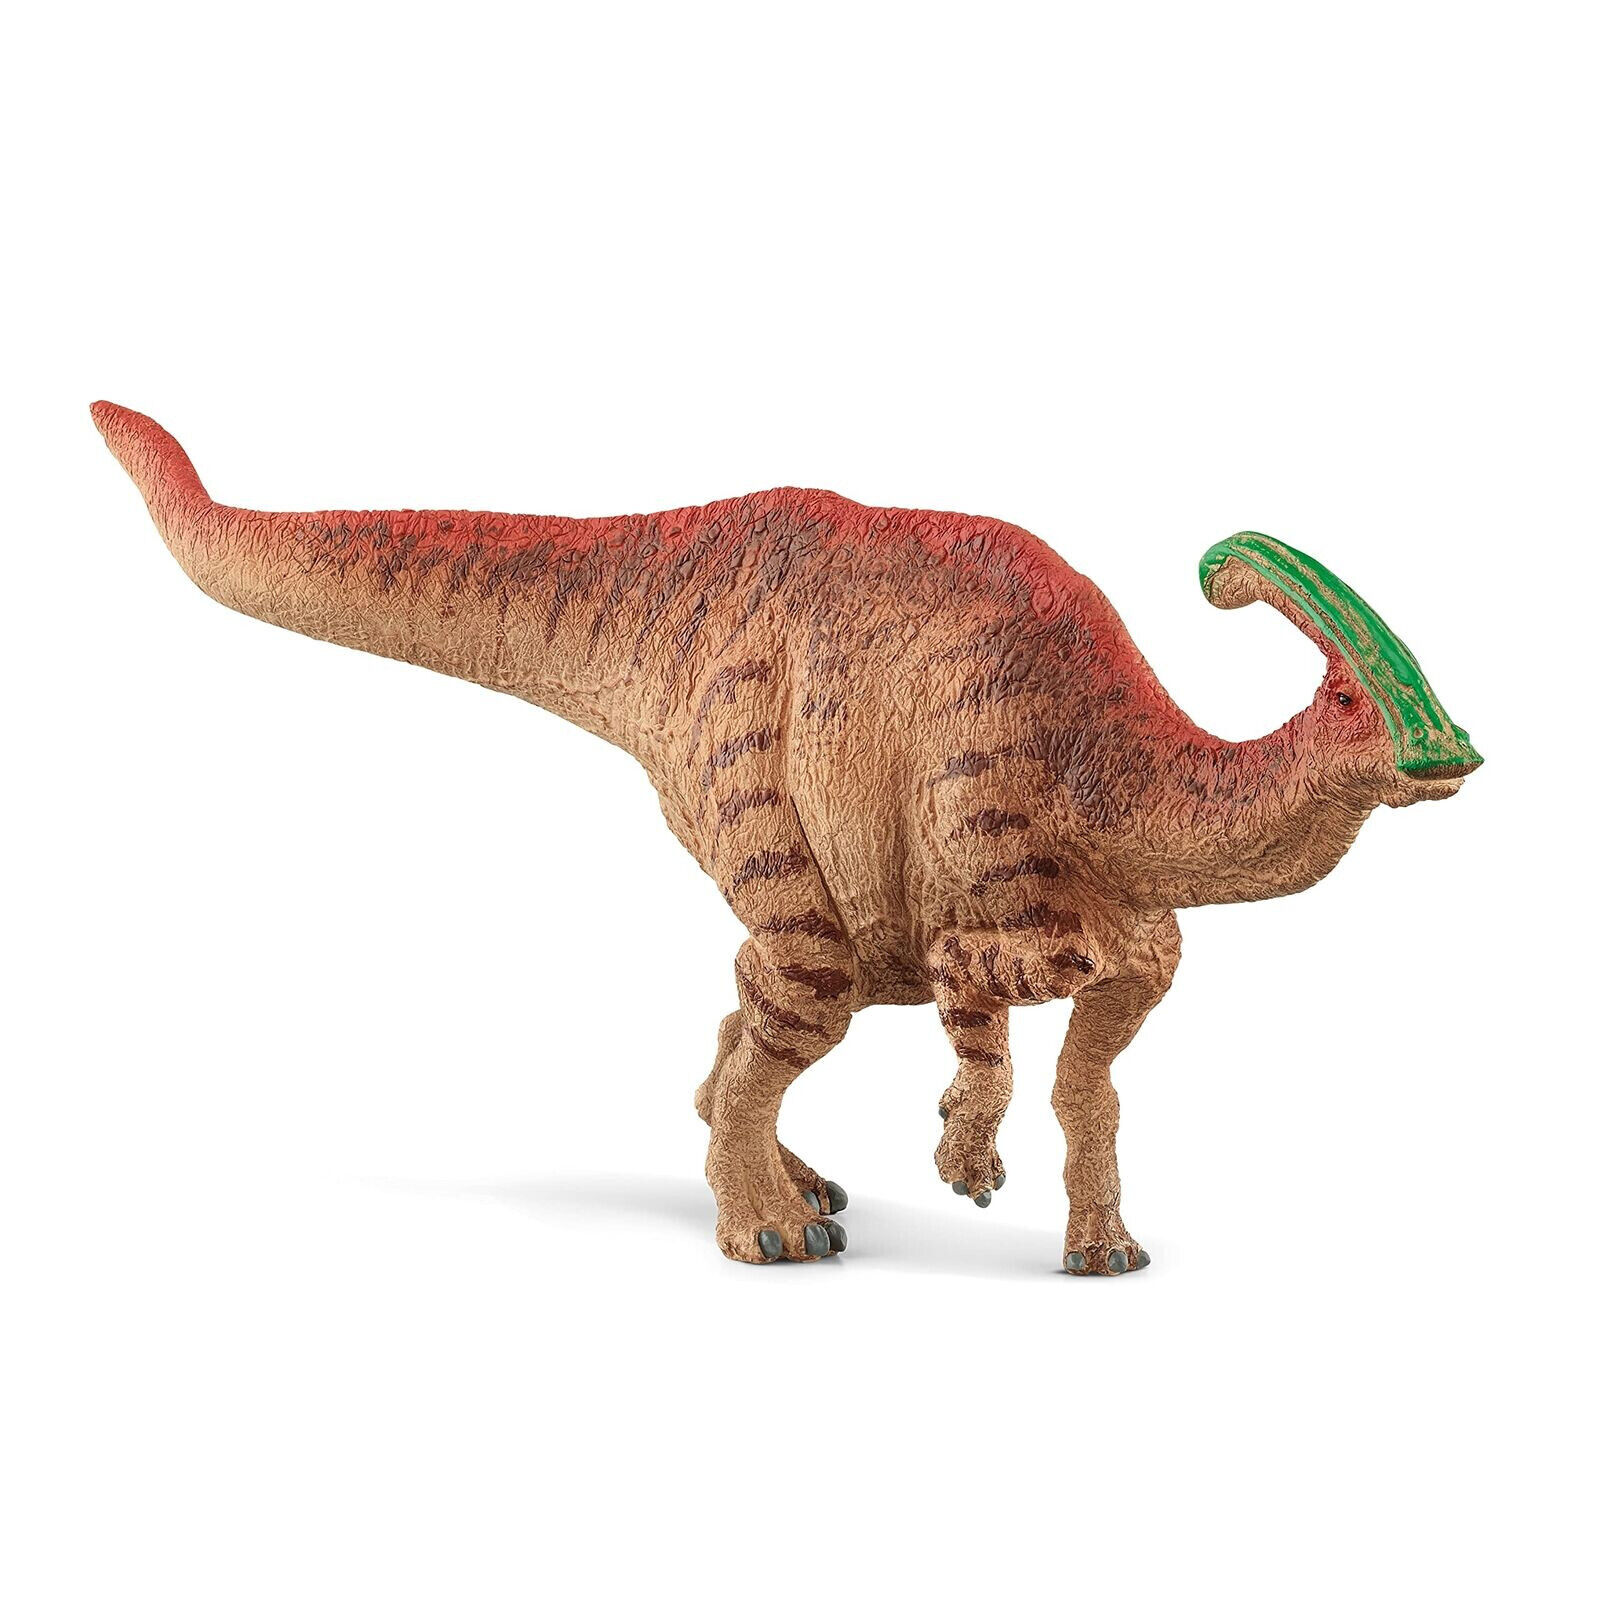 SCHLEICH Dinosaurs Parasaurolophus Toy Figure  Multi-colour (15030)